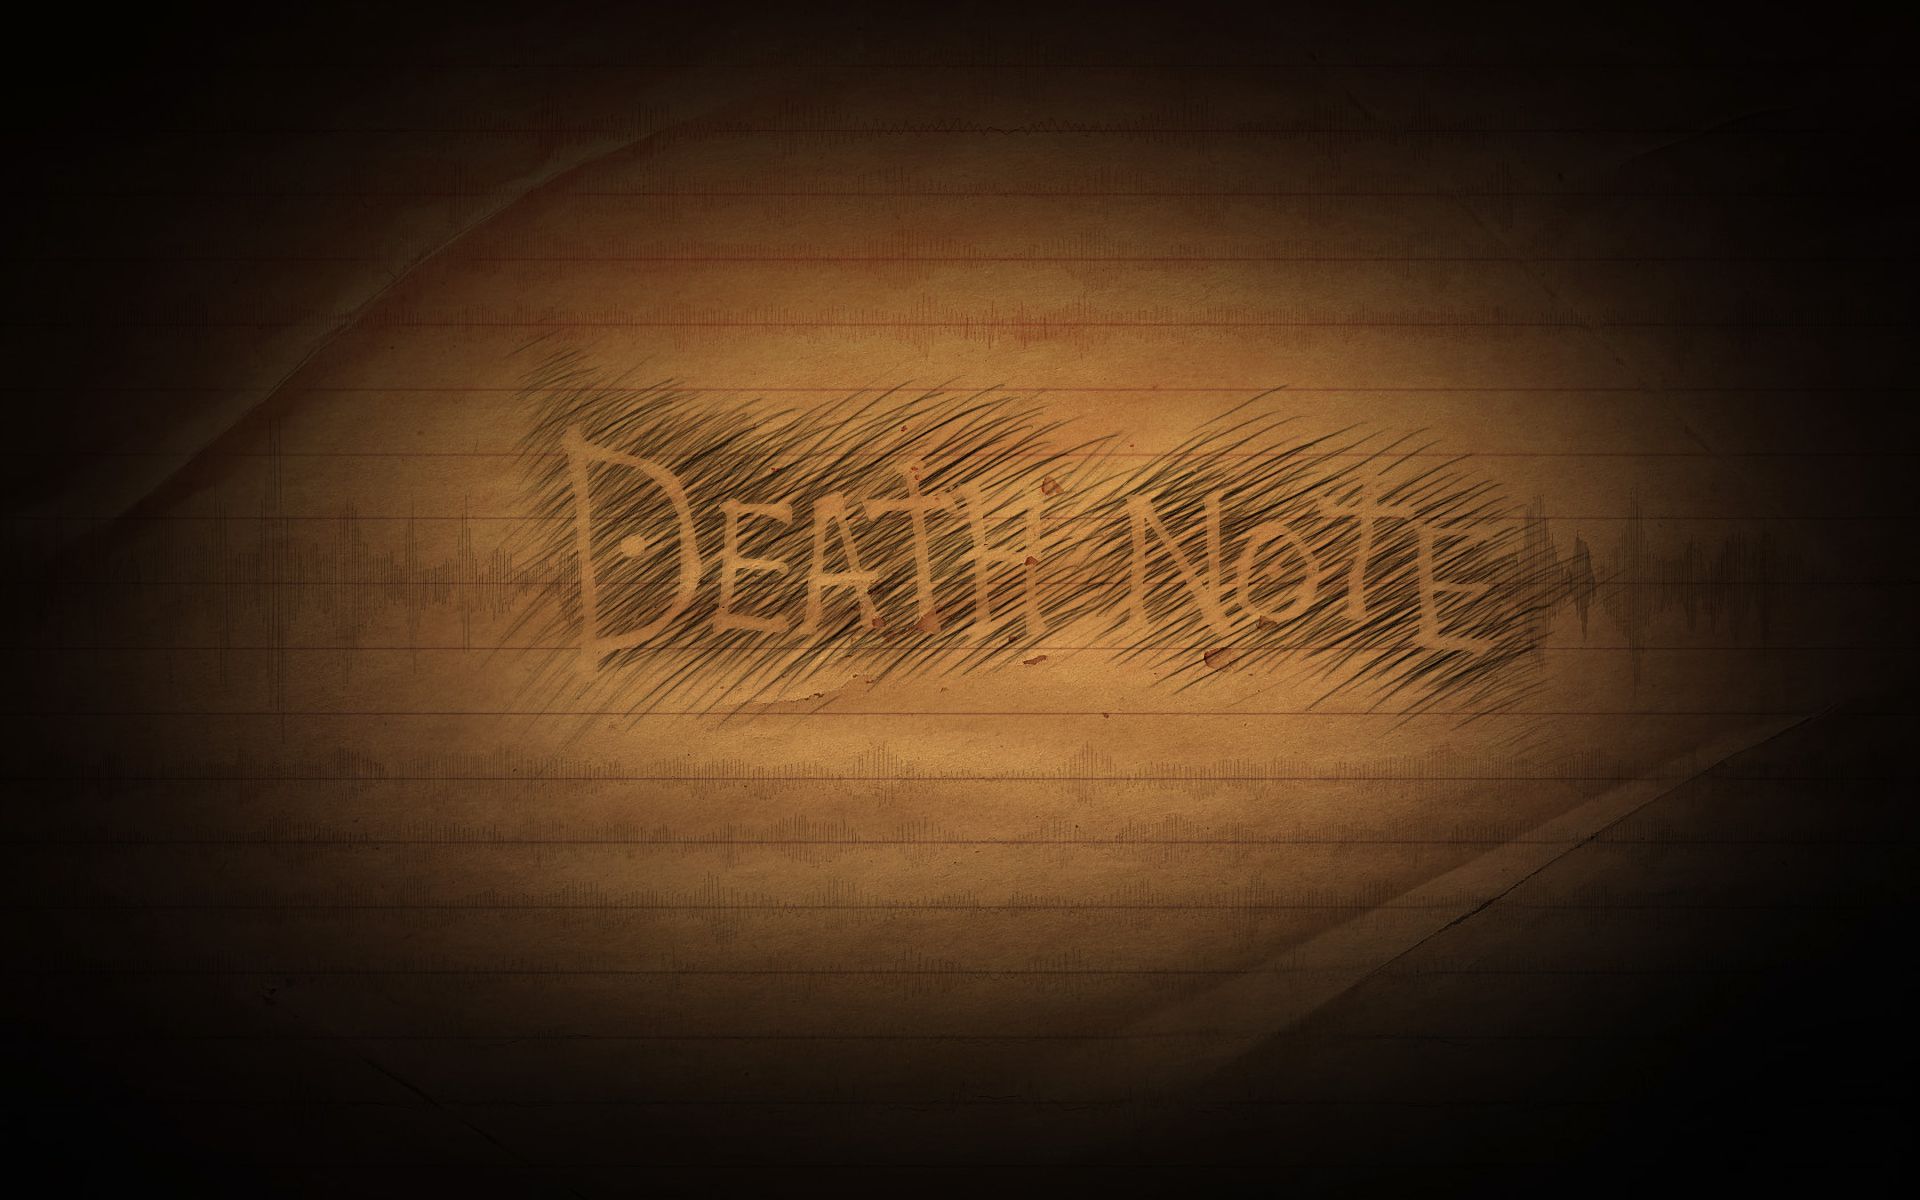 Baixar papel de parede para celular de Death Note: Notas Da Morte, Anime gratuito.